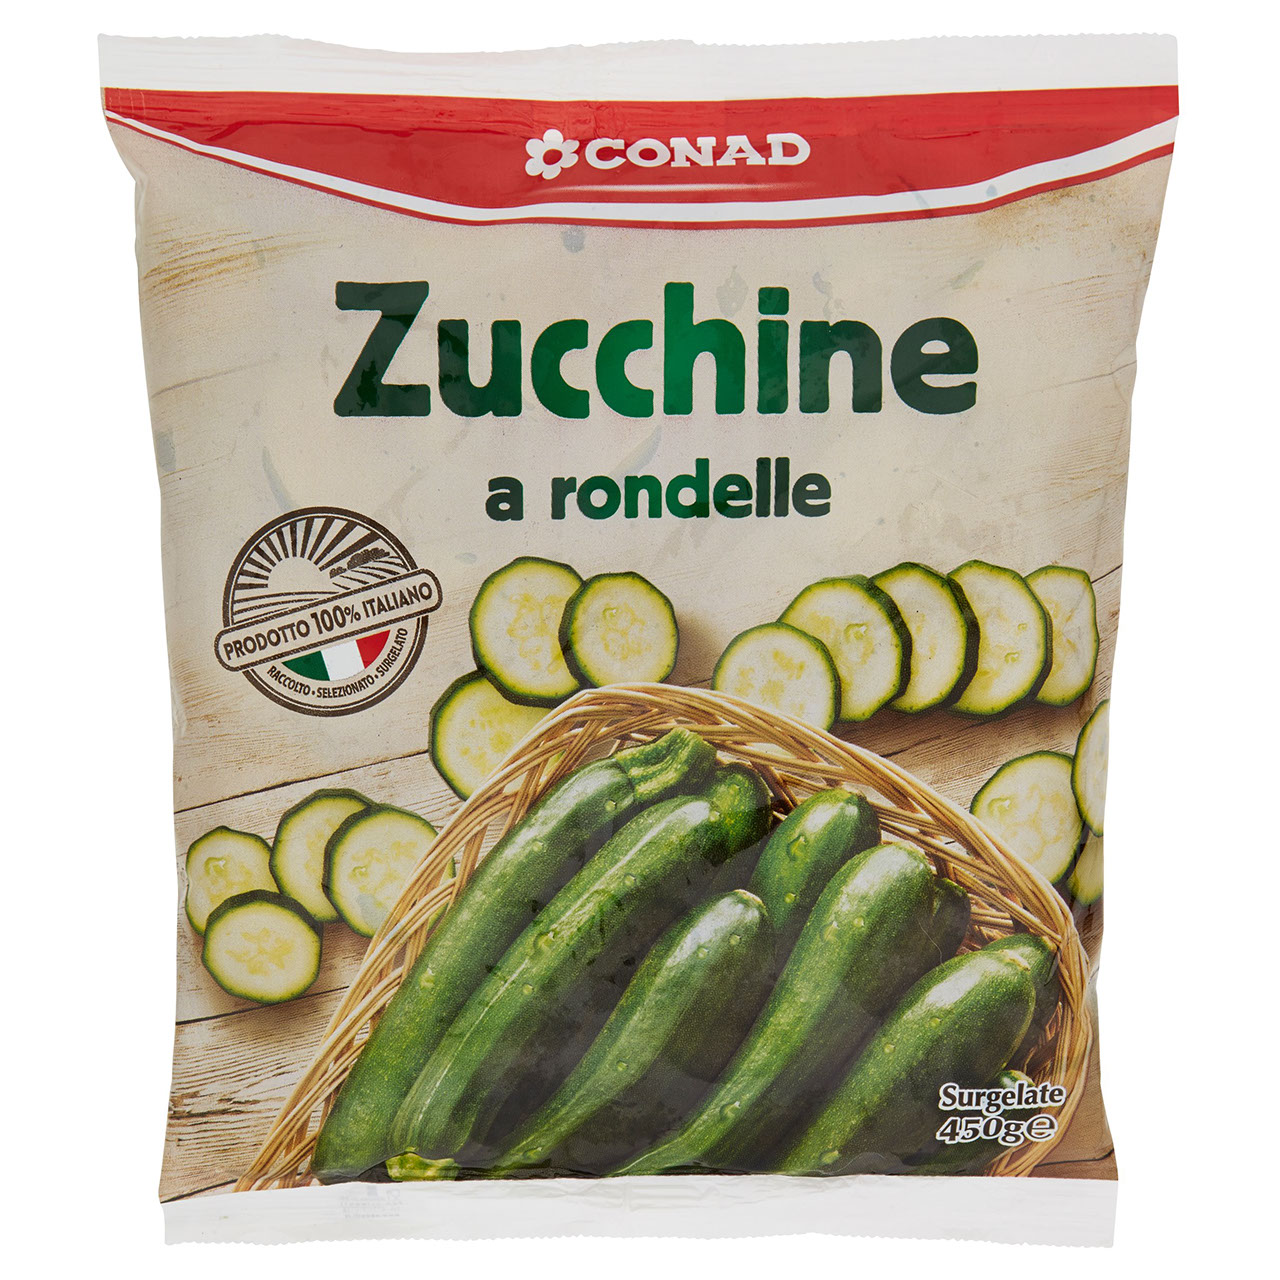 Zucchine Surgelate Conad in vendita online